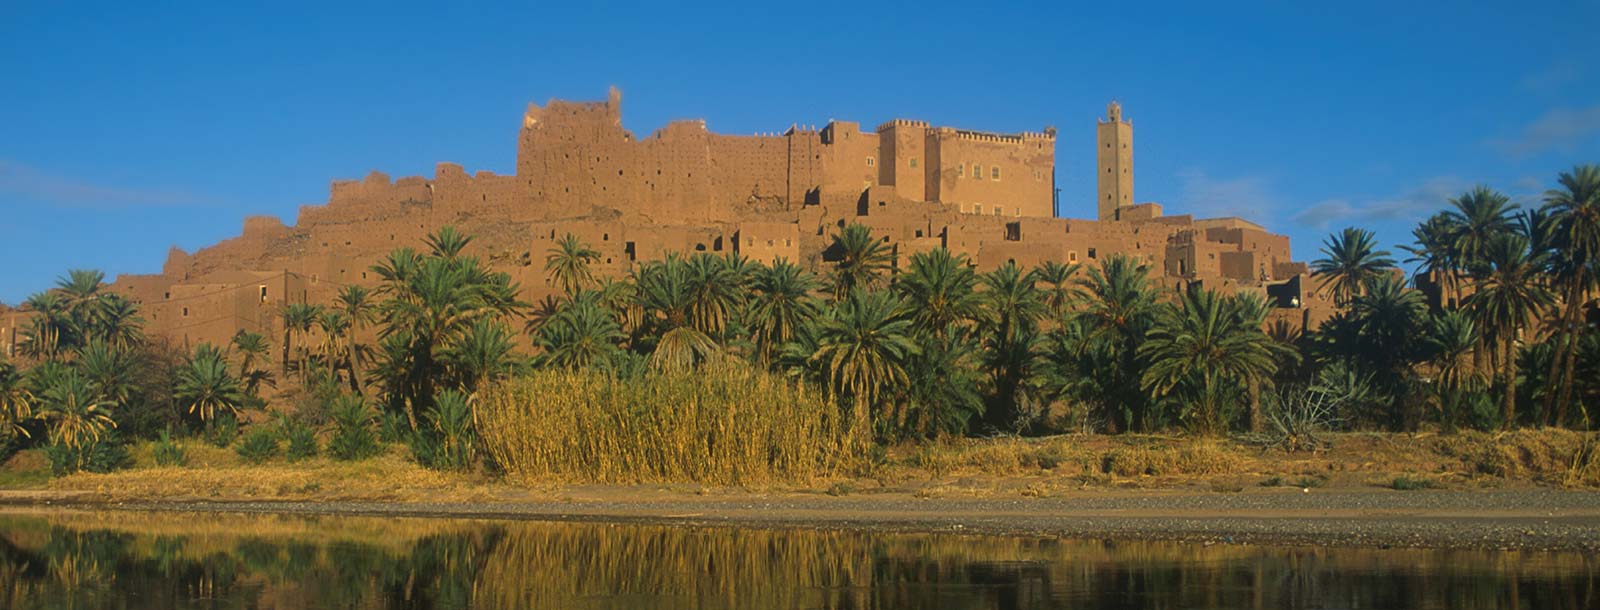 7 experiencias únicas para conocer Marruecos 8